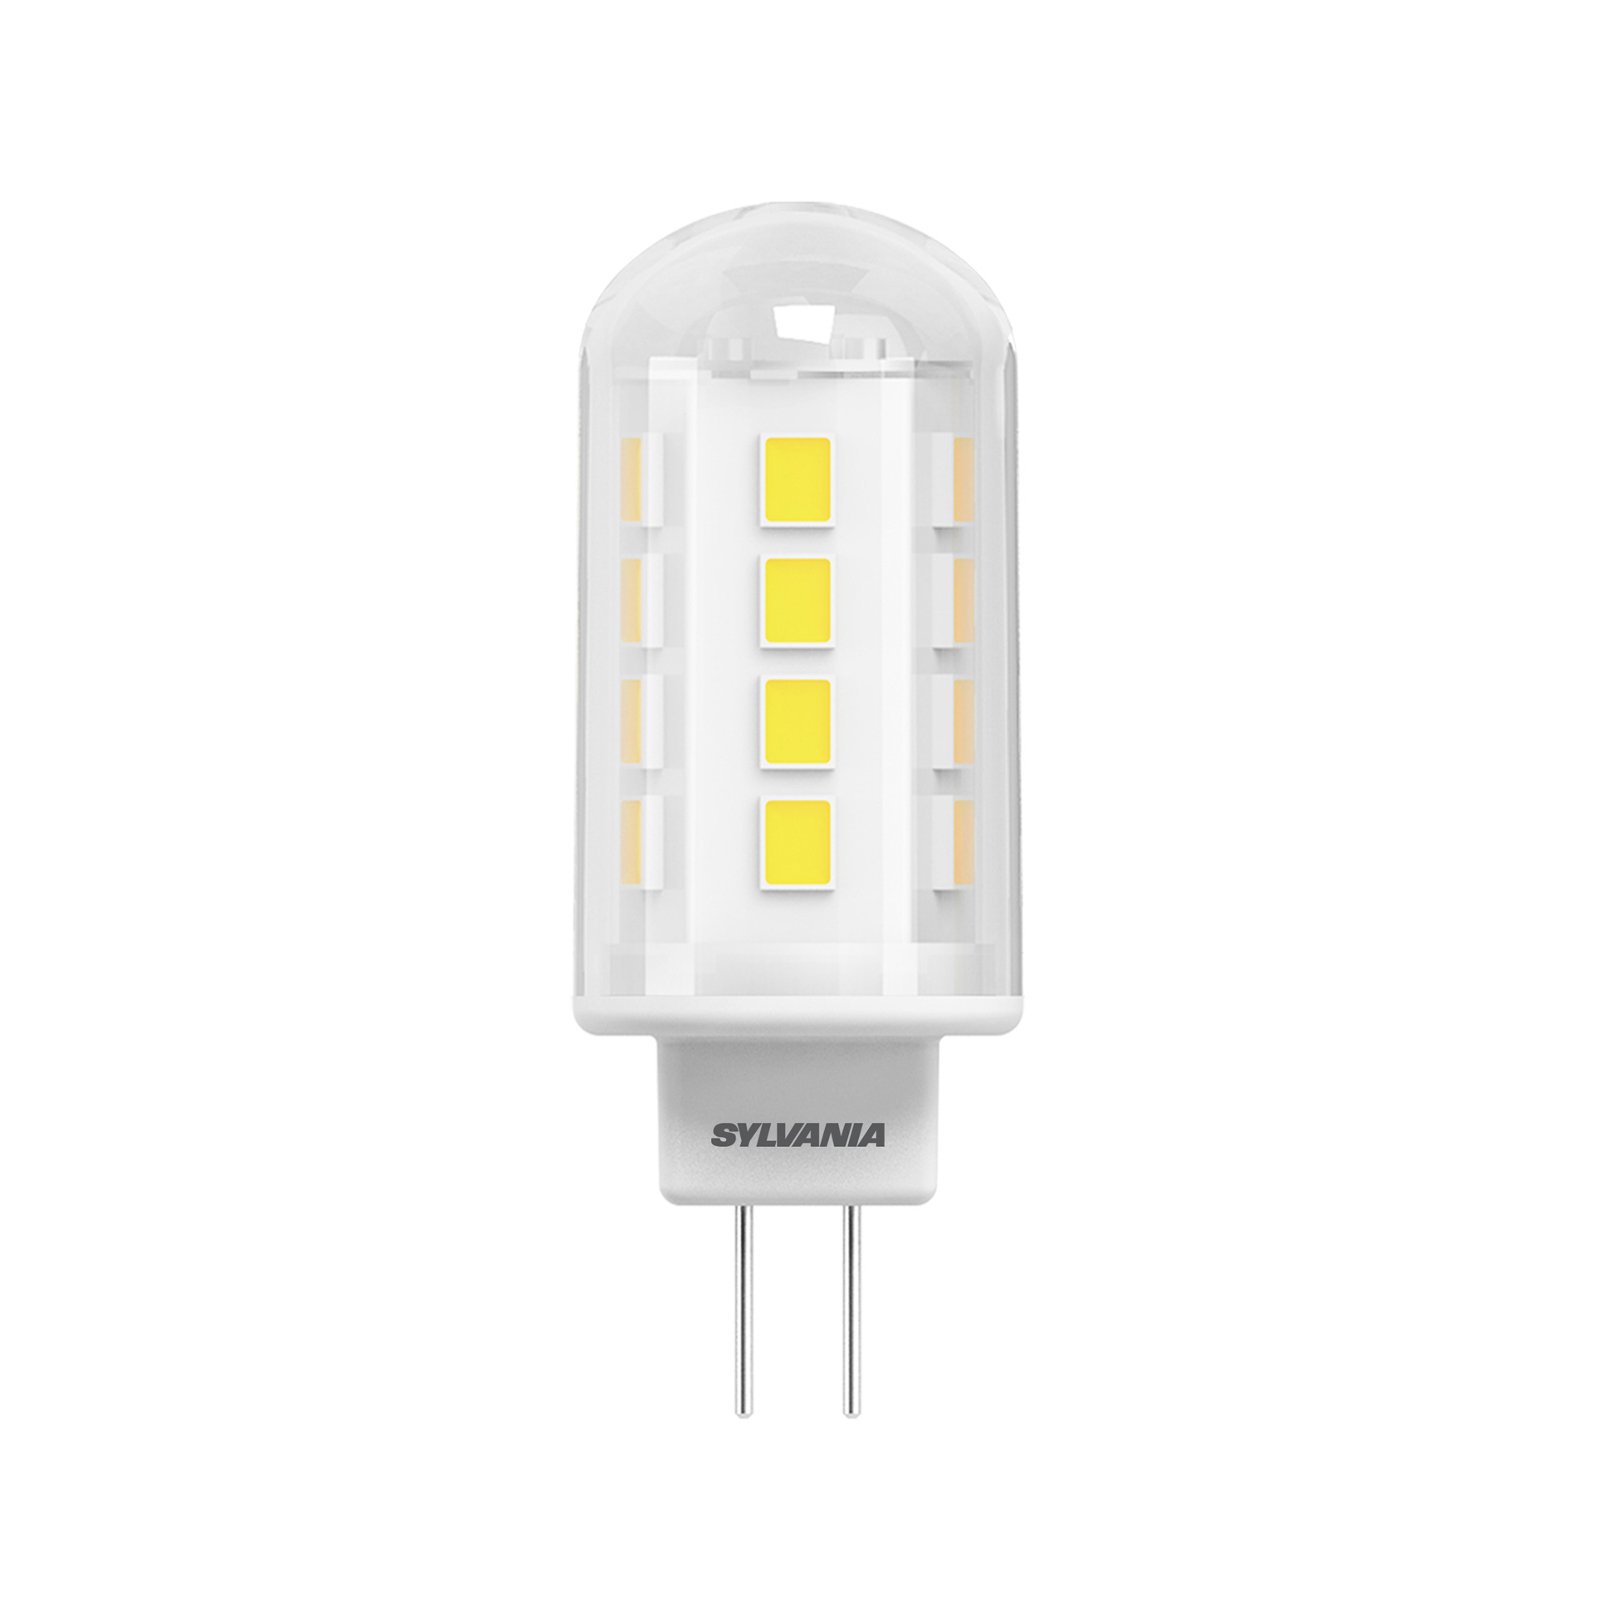 LED tappikantainen lamppu ToLEDo G4 1.9W kirkas lämmin valkoinen